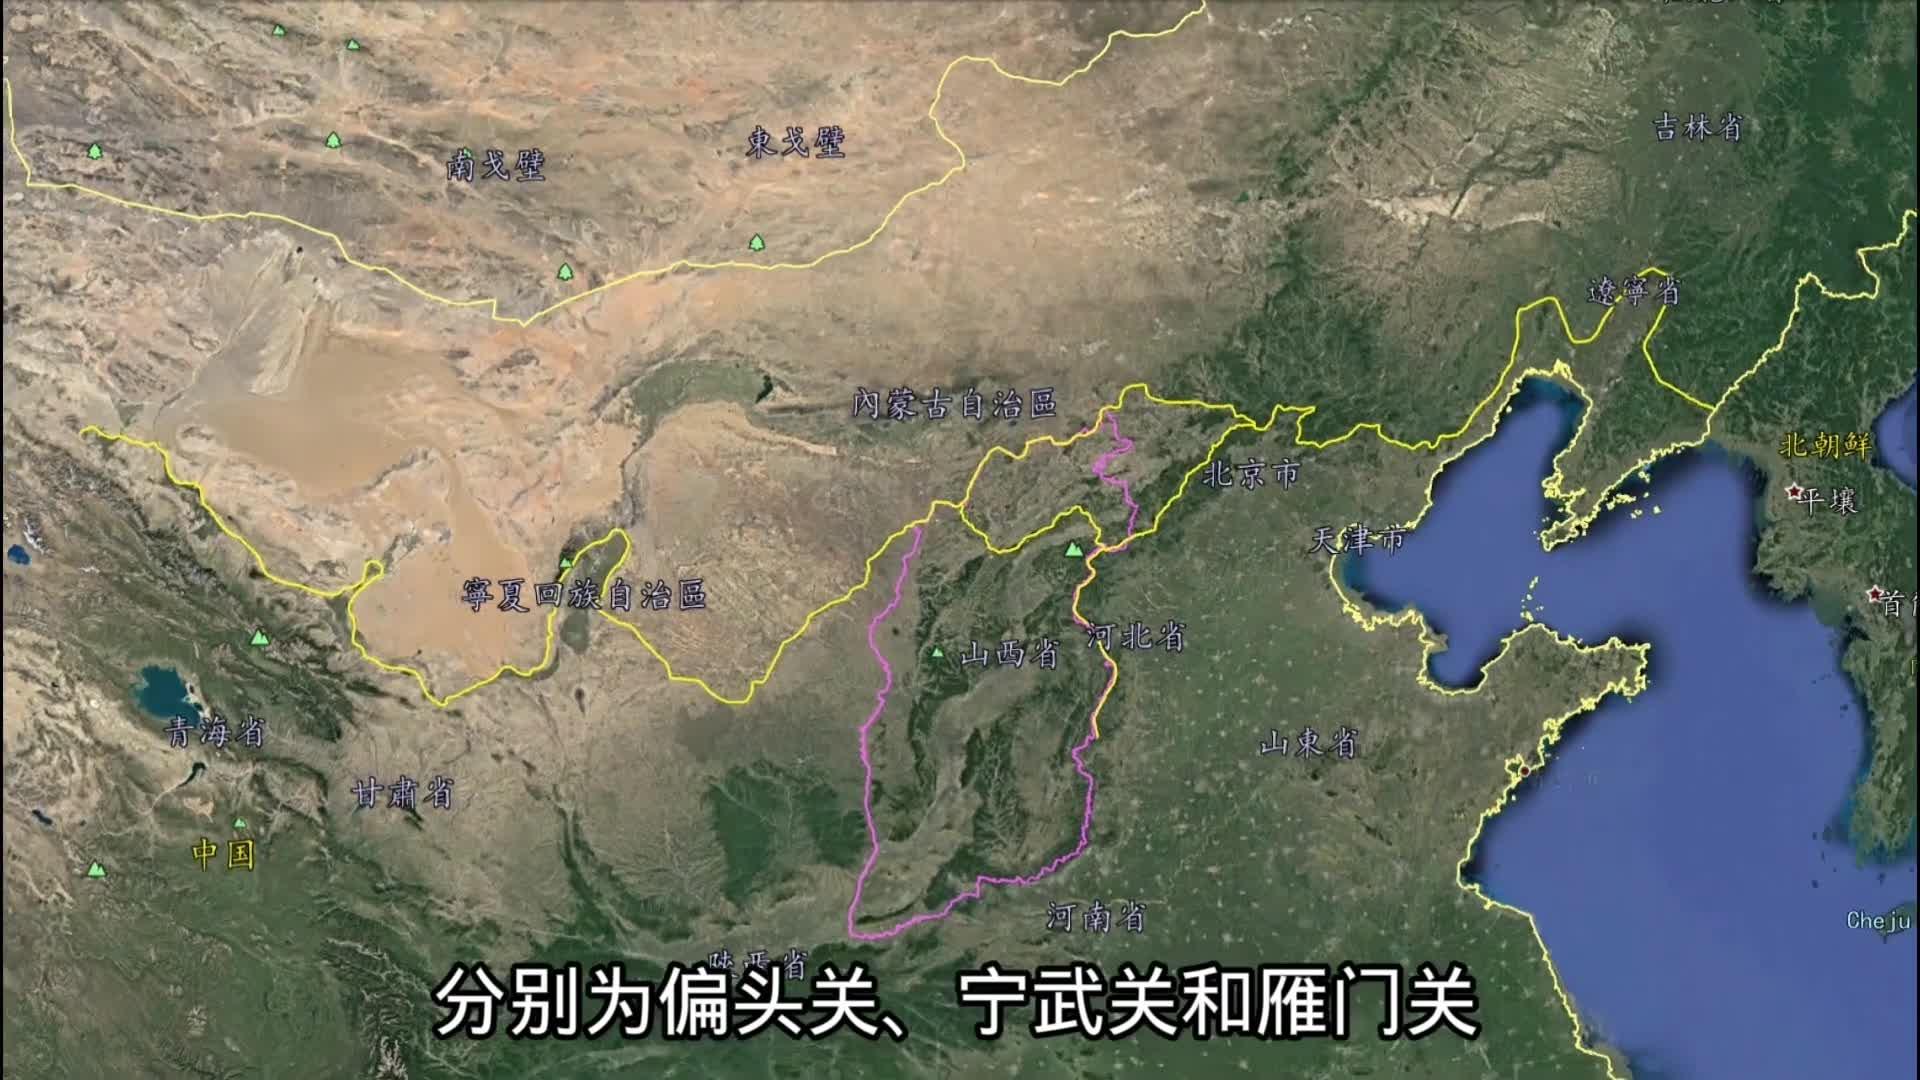 三维地图看明长城外三关,天下九塞雁门为首,一座关城半部中华史